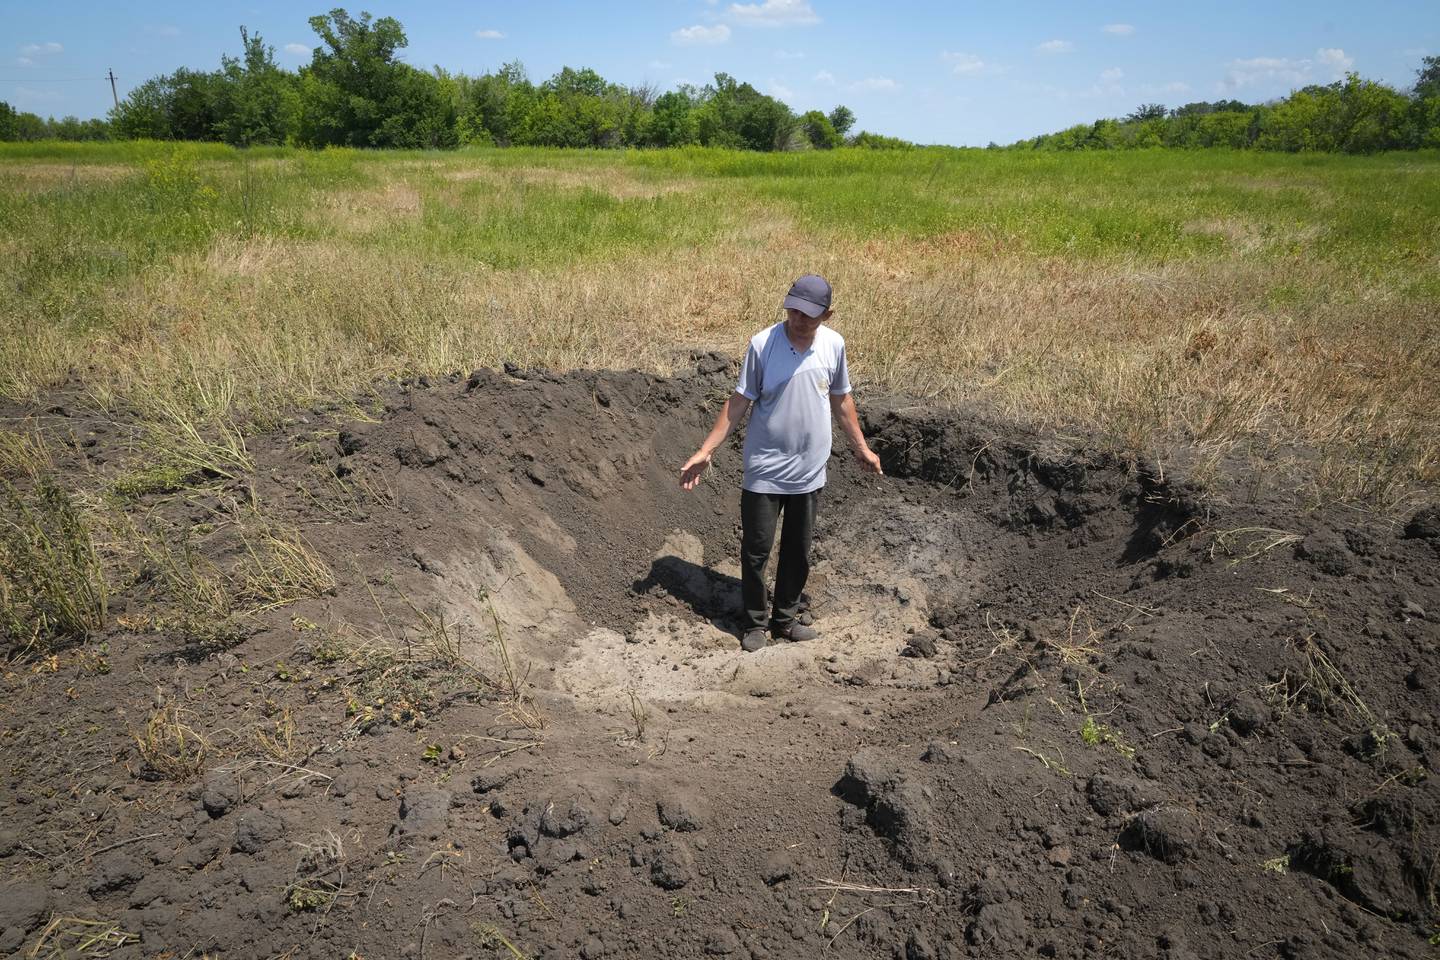 Krigen i Ukraina kan skape en matvarekrisen i verden ettersom ukrainske bønder verken får dyrket eller solgt kornet sitt som vanlig. Her viser kornbonde Serhiy, fram et bombekrater fra en russisk rakett i Ptyche i Donetsk-regionen øst i Ukraina, 12 juni.